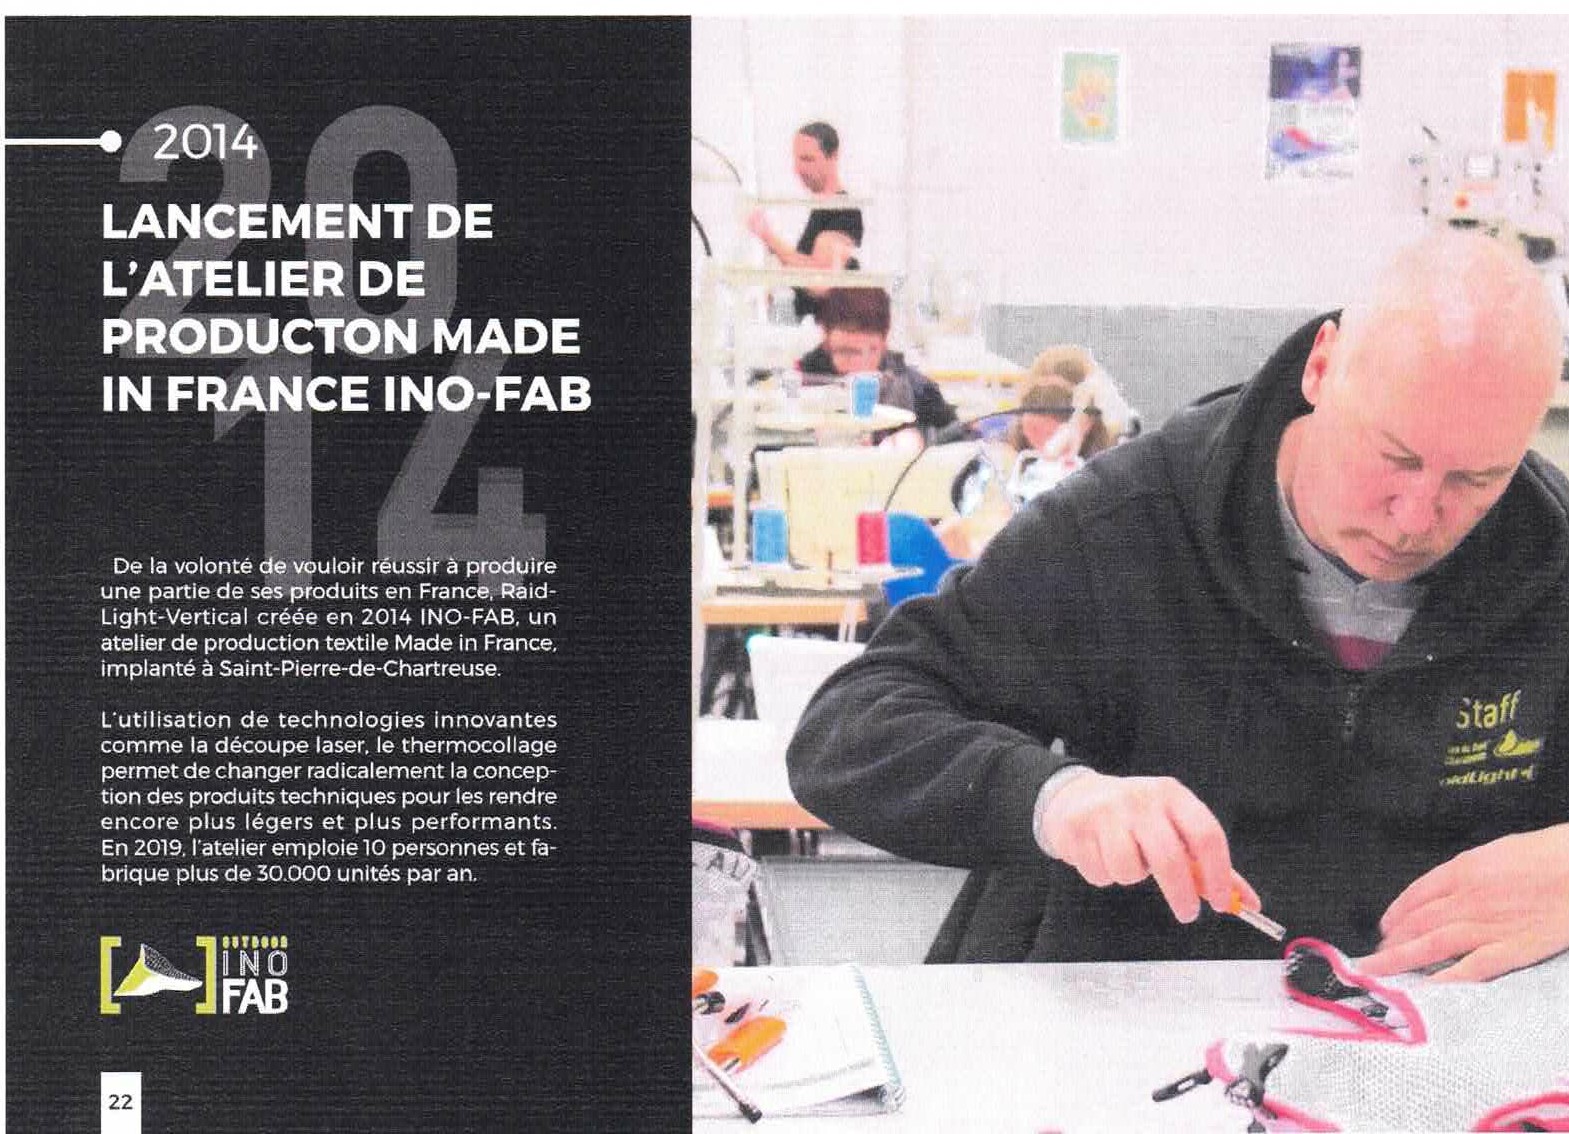 Proposition de reprise de l’atelier de production Raidlight de Saint-Pierre-de-Chartreuse